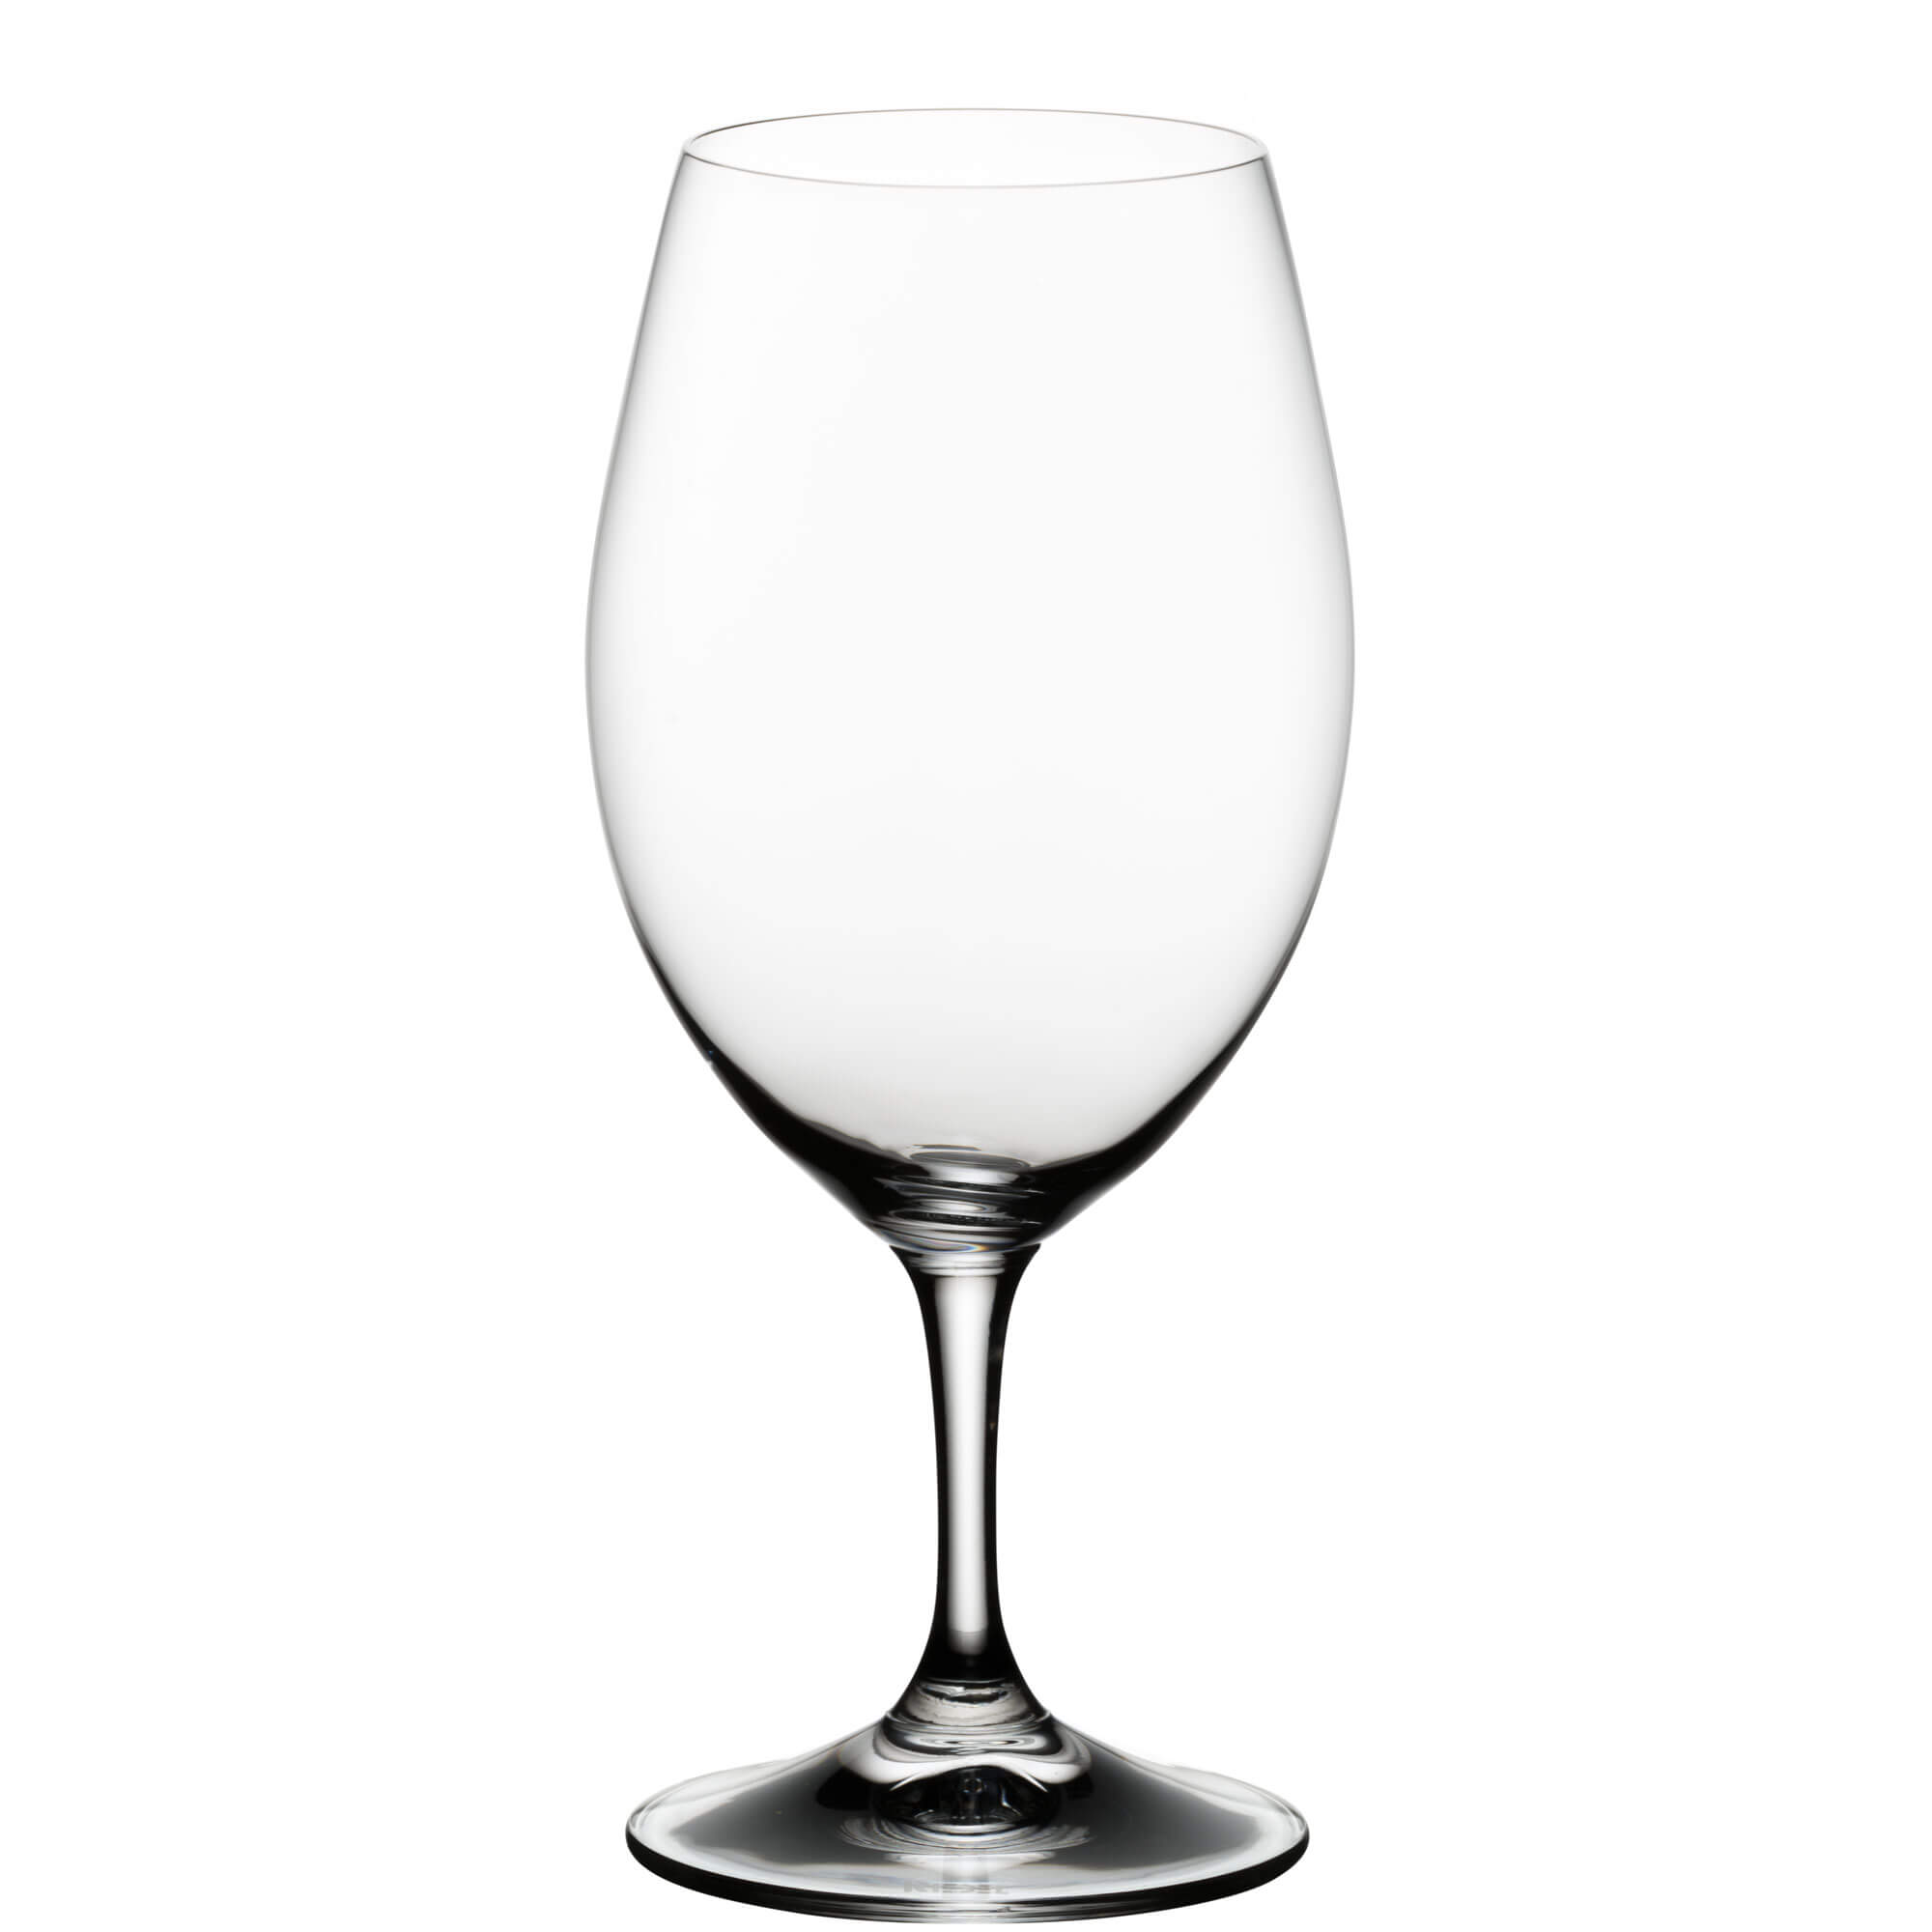 Magnum glass Ouverture, Riedel - 530ml (2 pcs.)